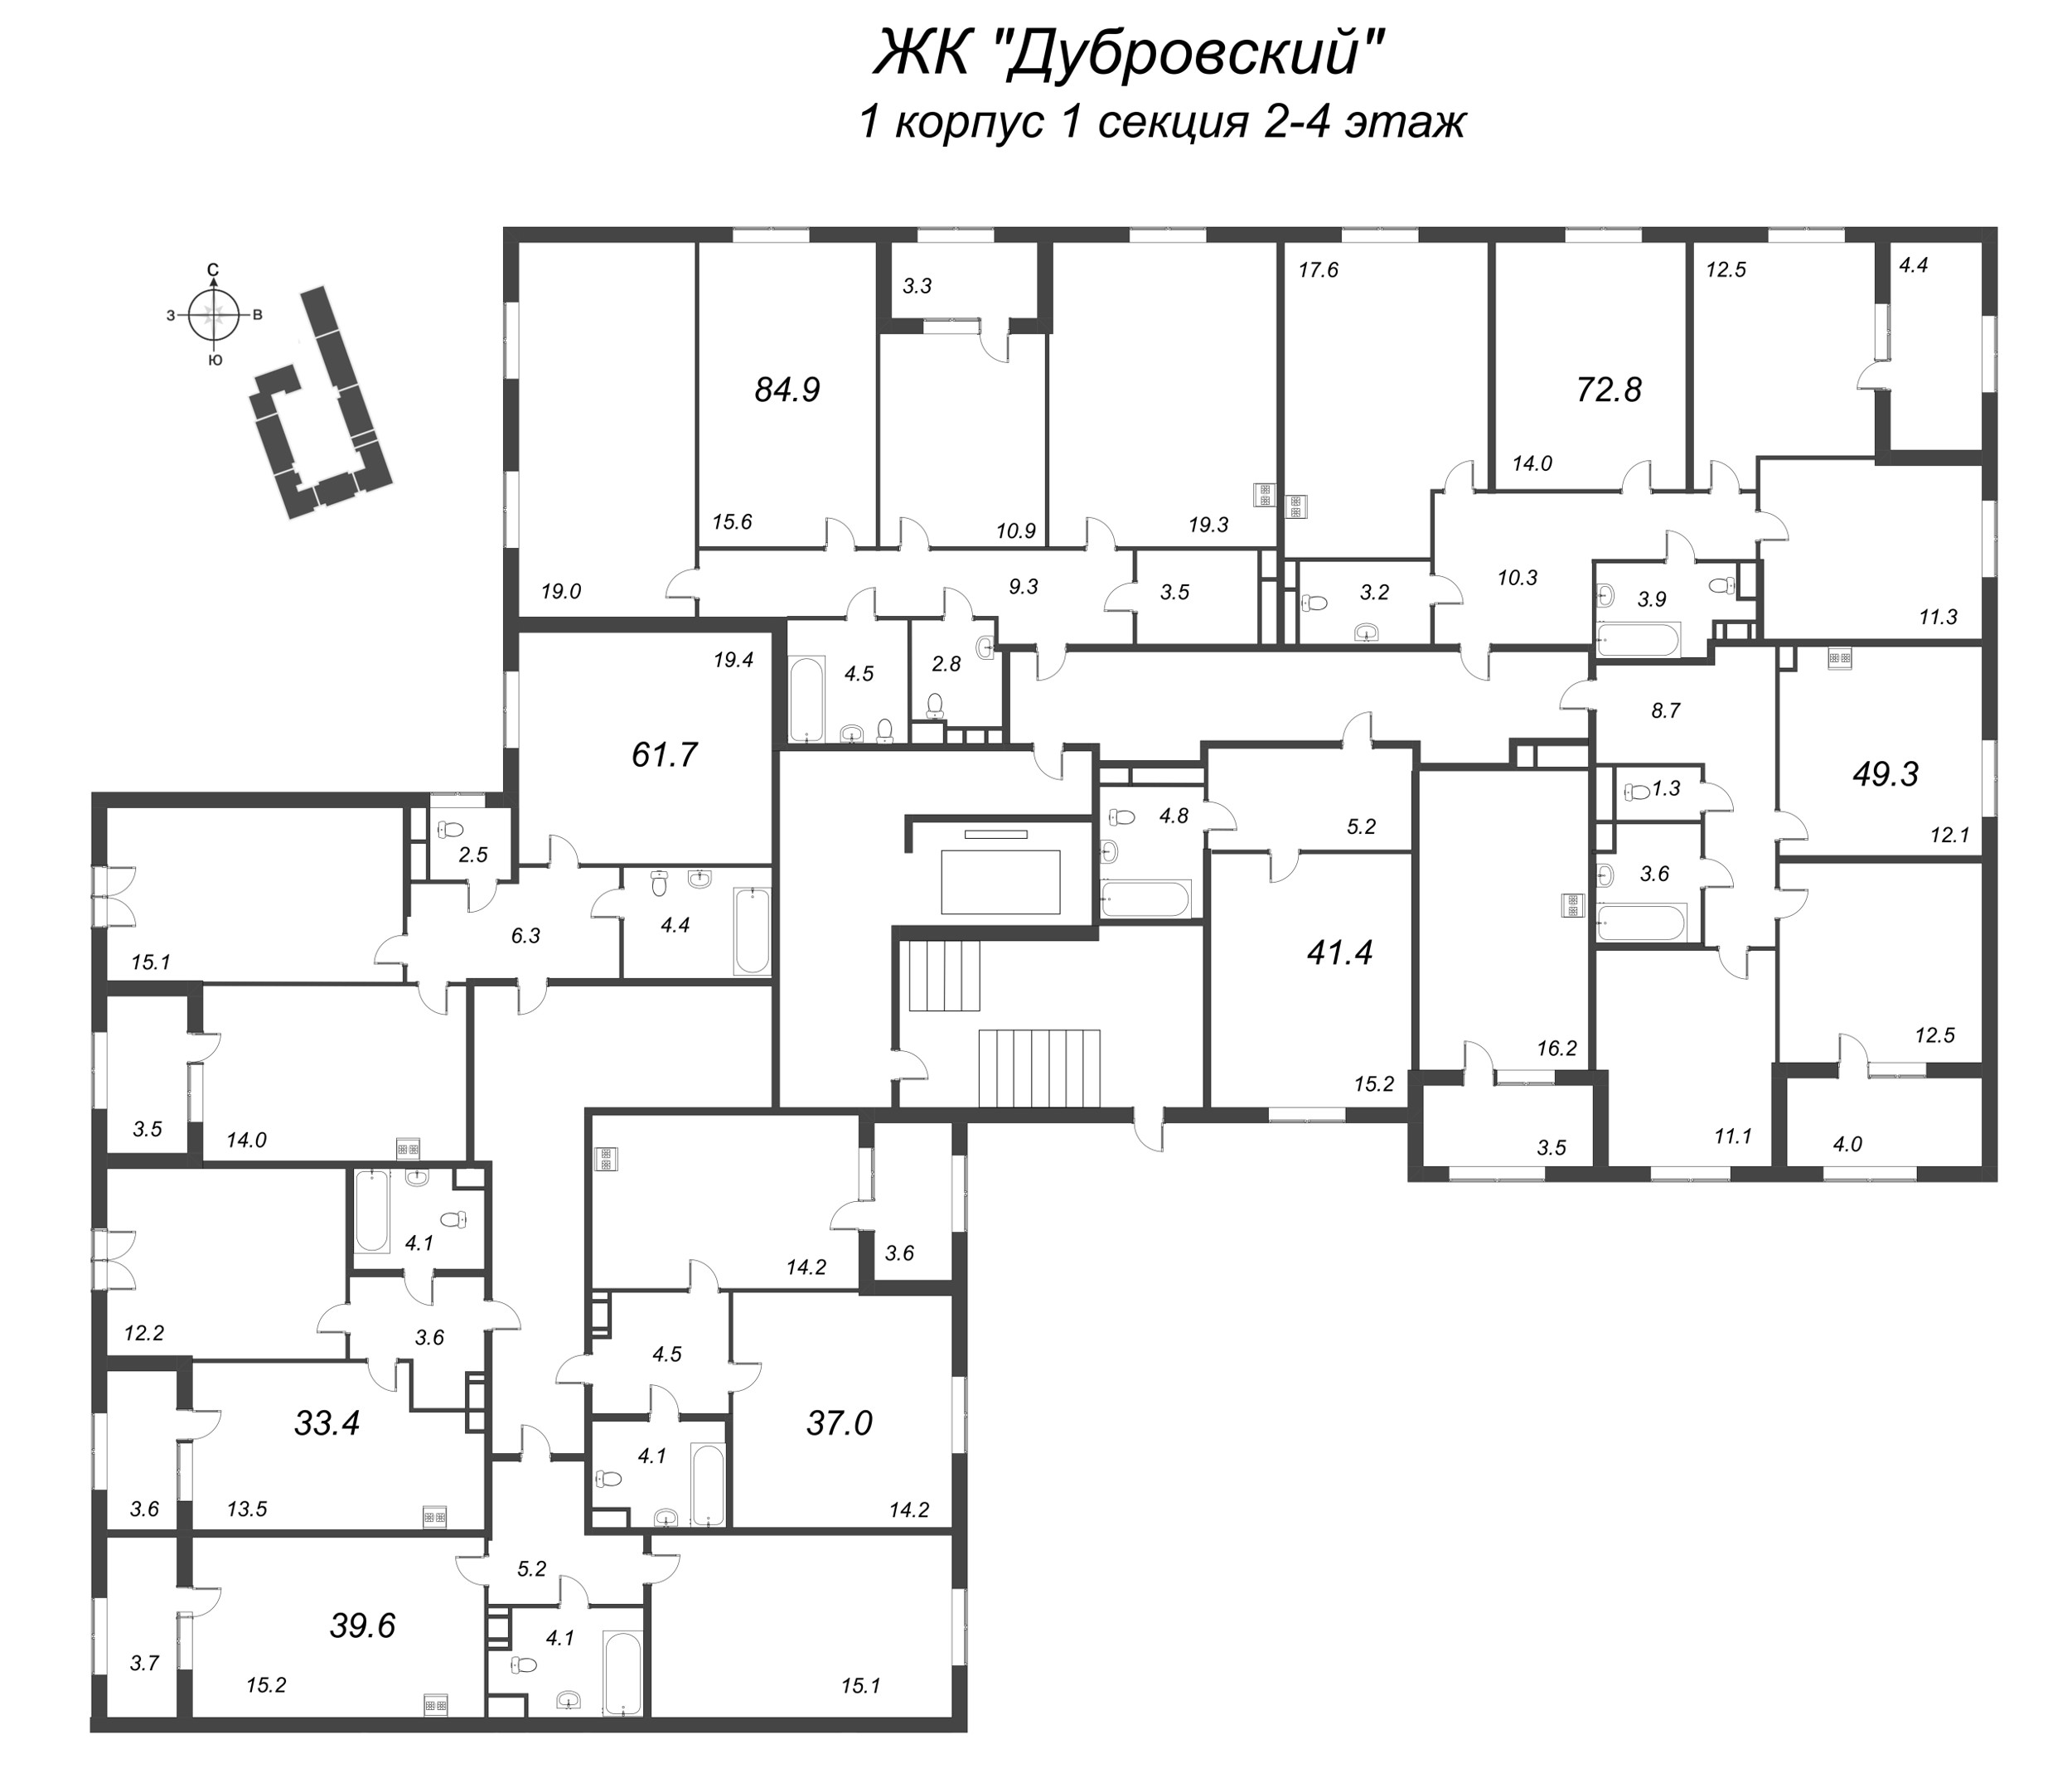 2-комнатная квартира, 49.3 м² в ЖК "Дубровский" - планировка этажа